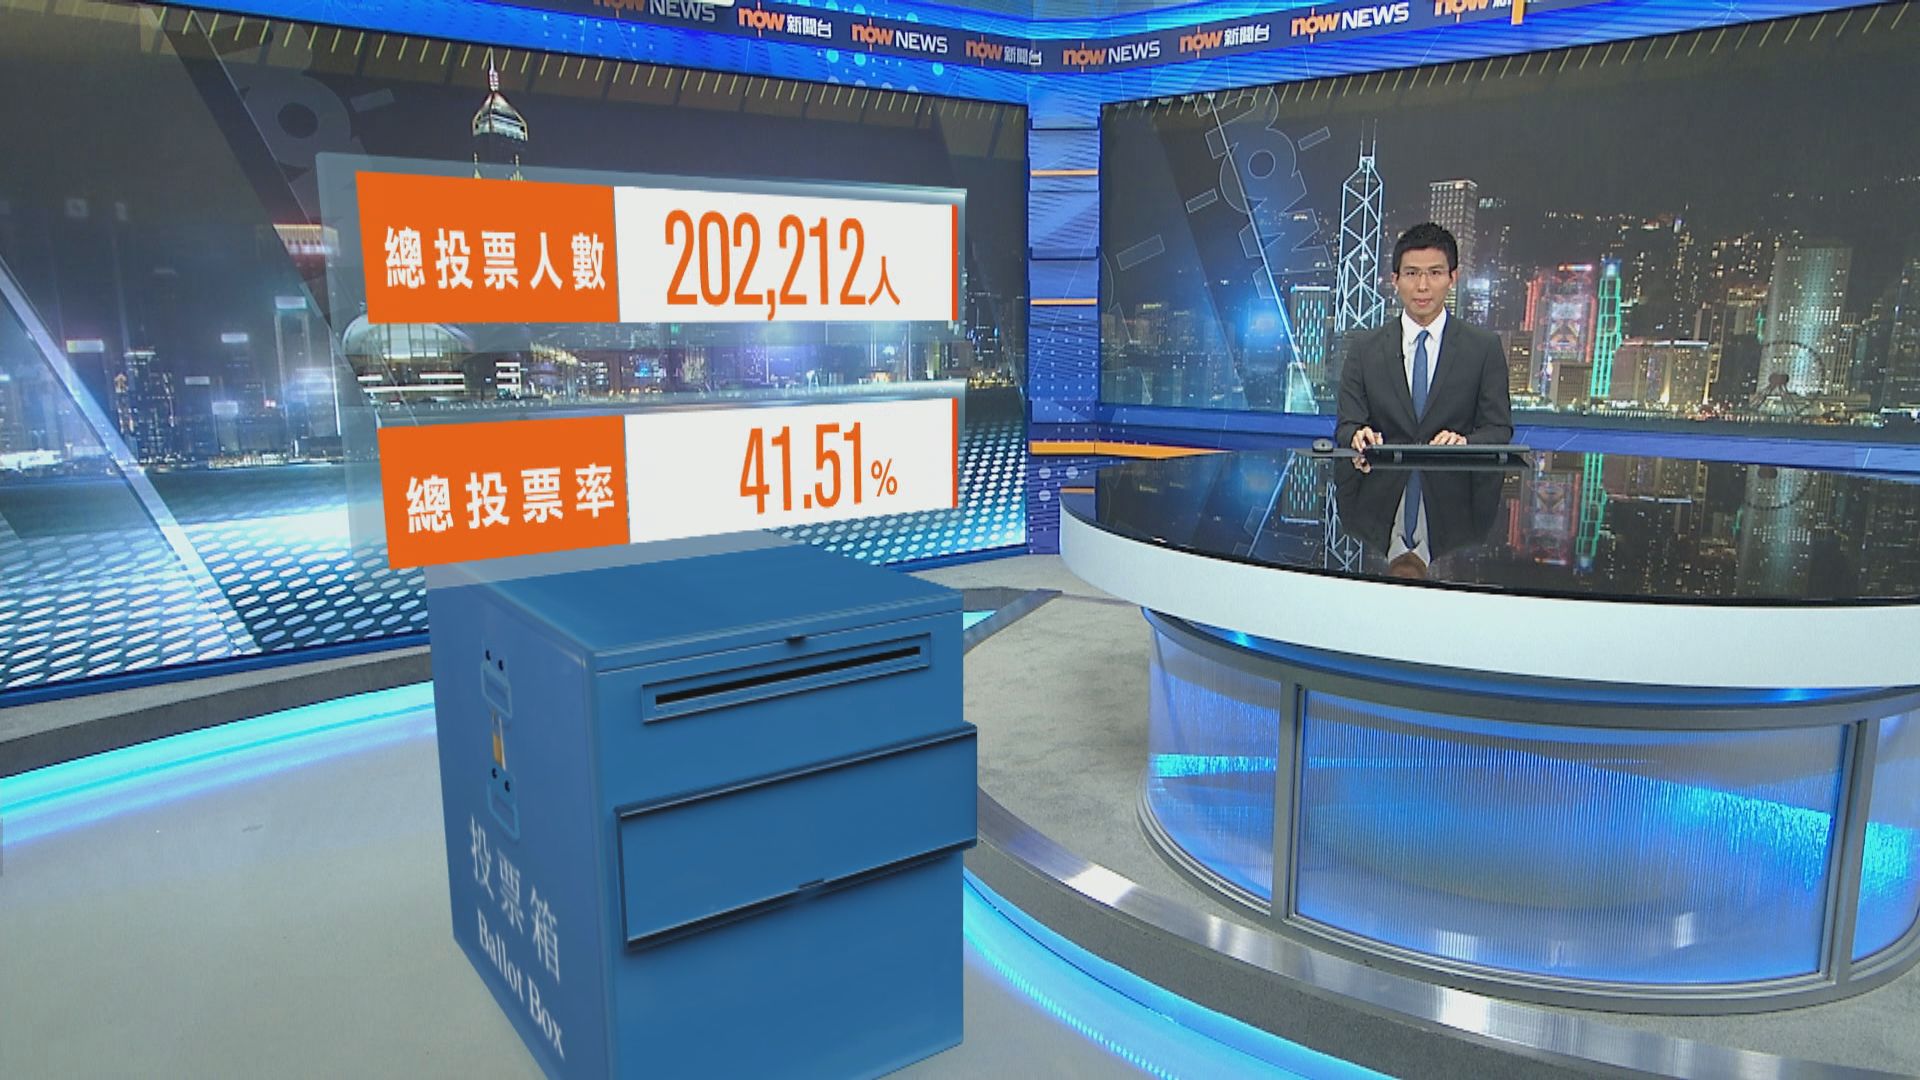 九龍西補選截至九時半投票率為41.51%